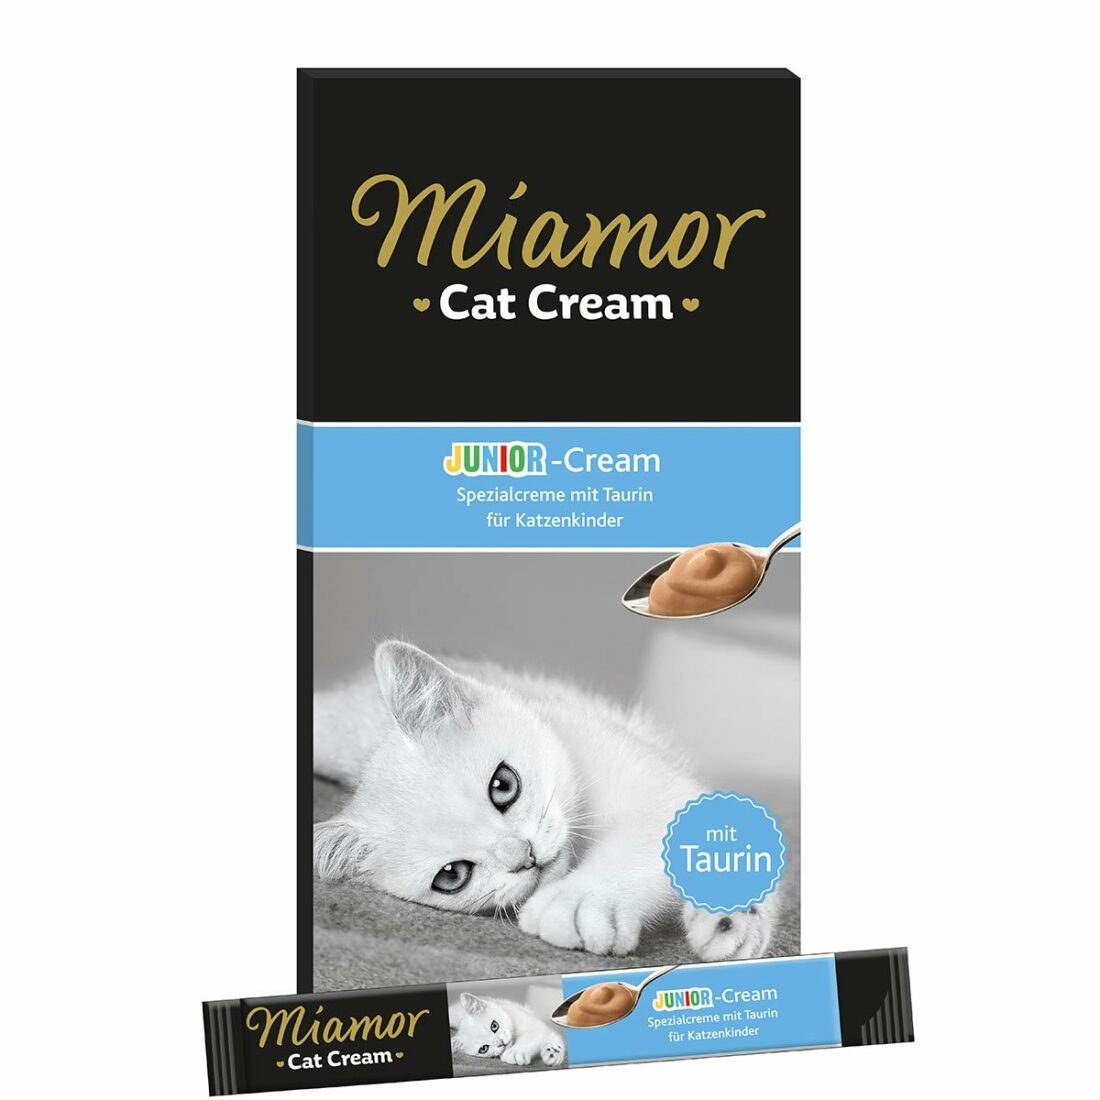 Miamor Cat Cream Junior-Cream 11 ×